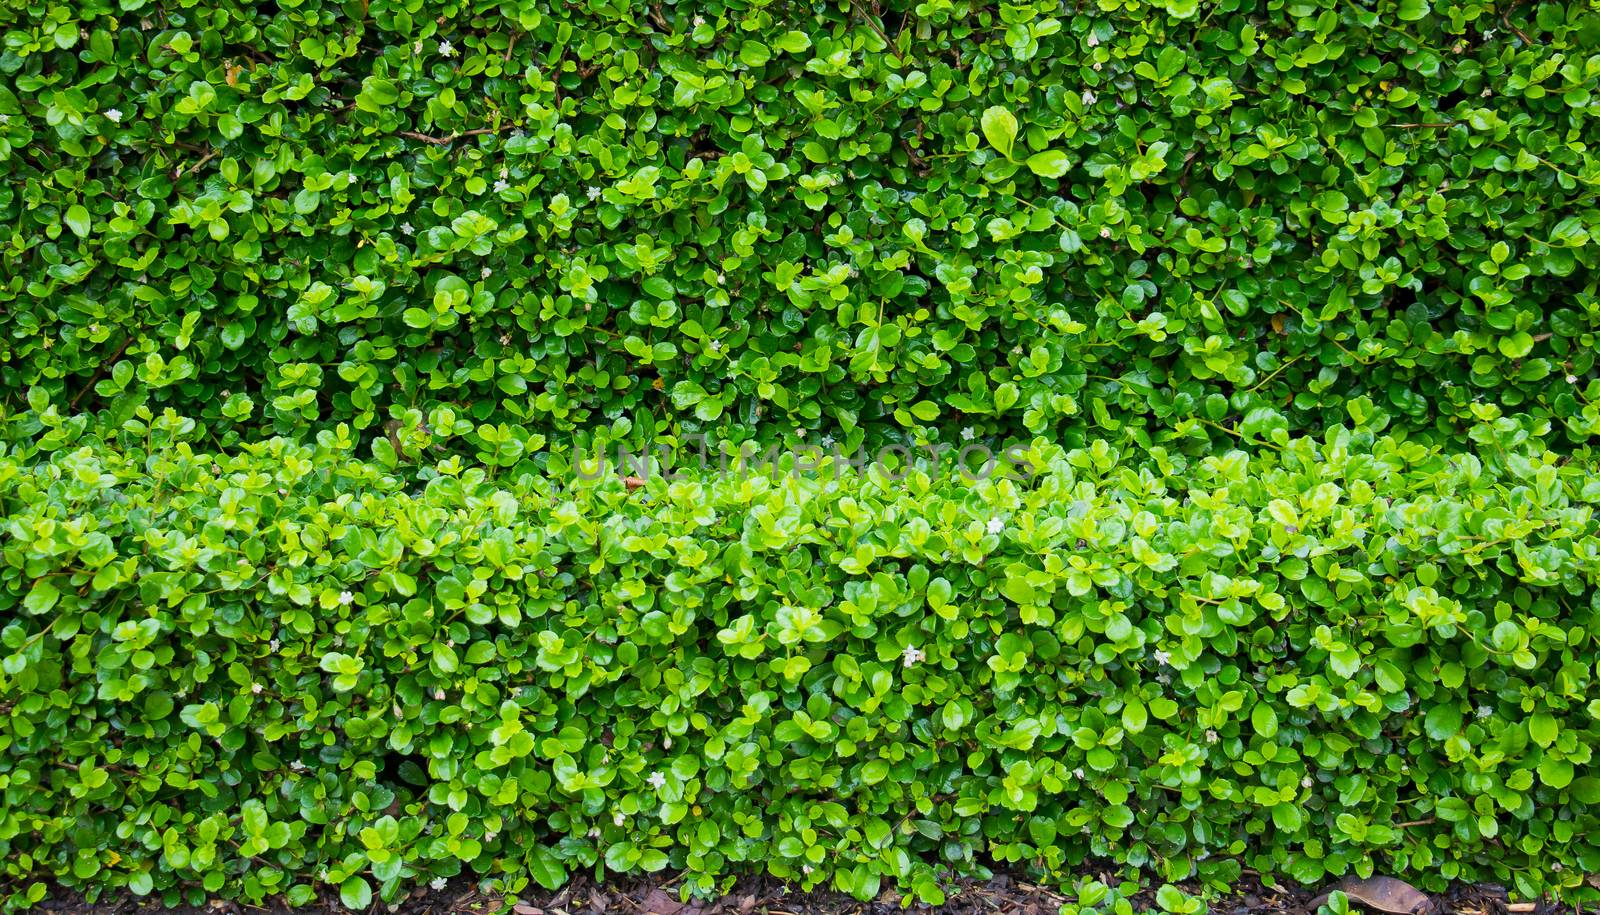 fujian tea tree bush, fujian tea shrub, garden green plant background